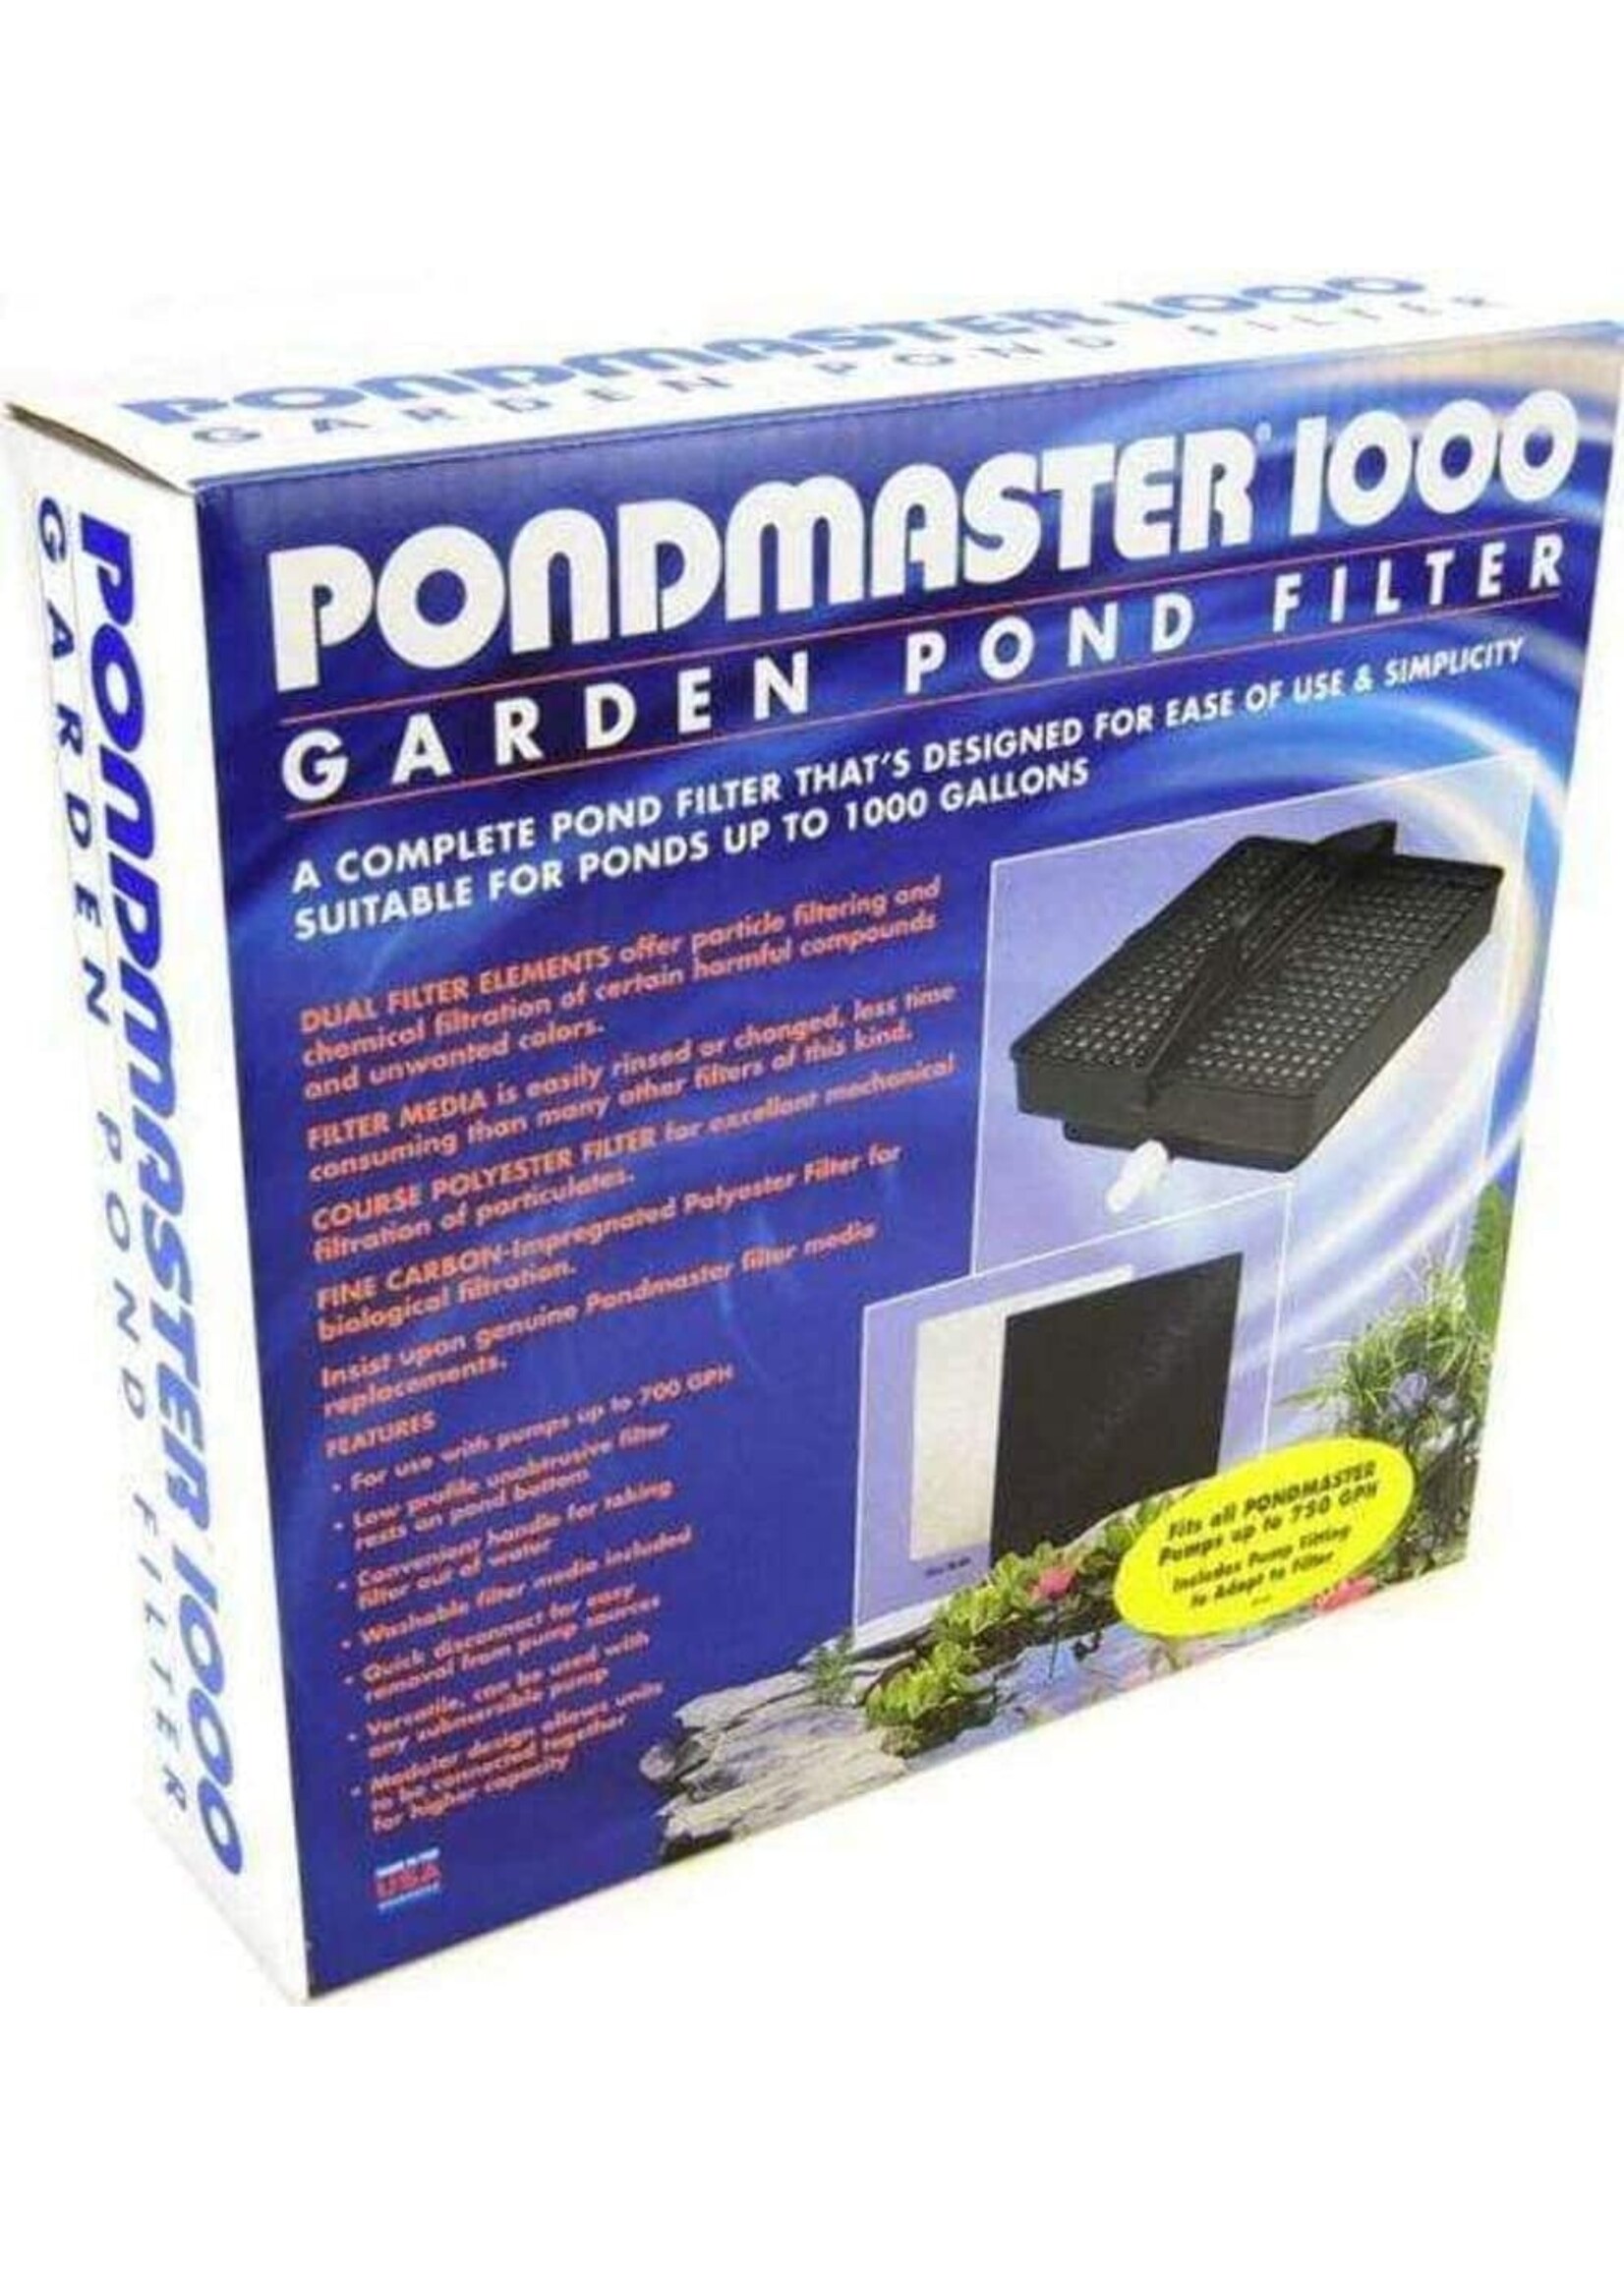 Pondmaster Pondmaster 1000 Garden Pond Filter